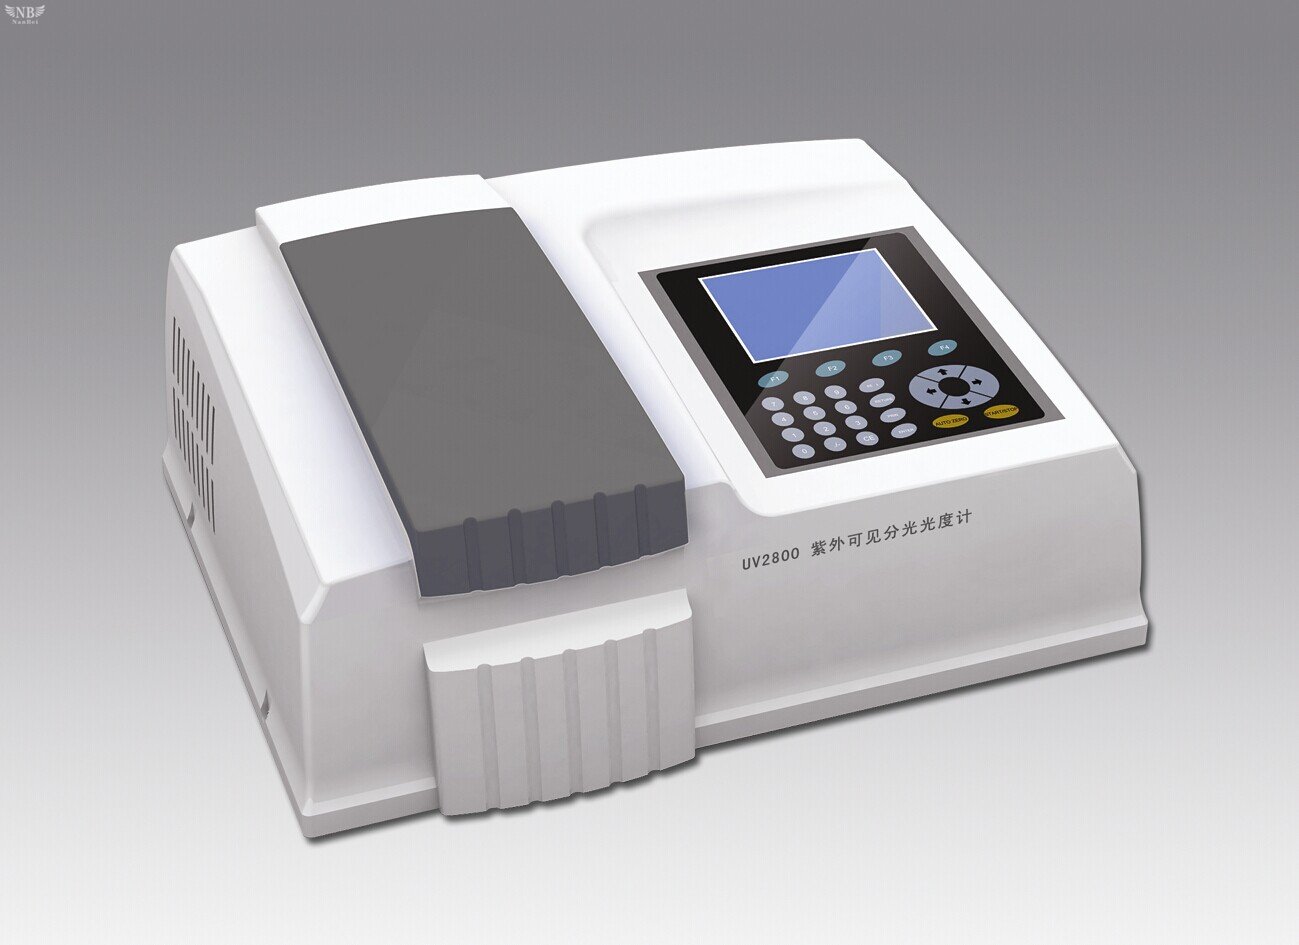 UV2800PC UV-VIS Double Beam Spectrophotometer